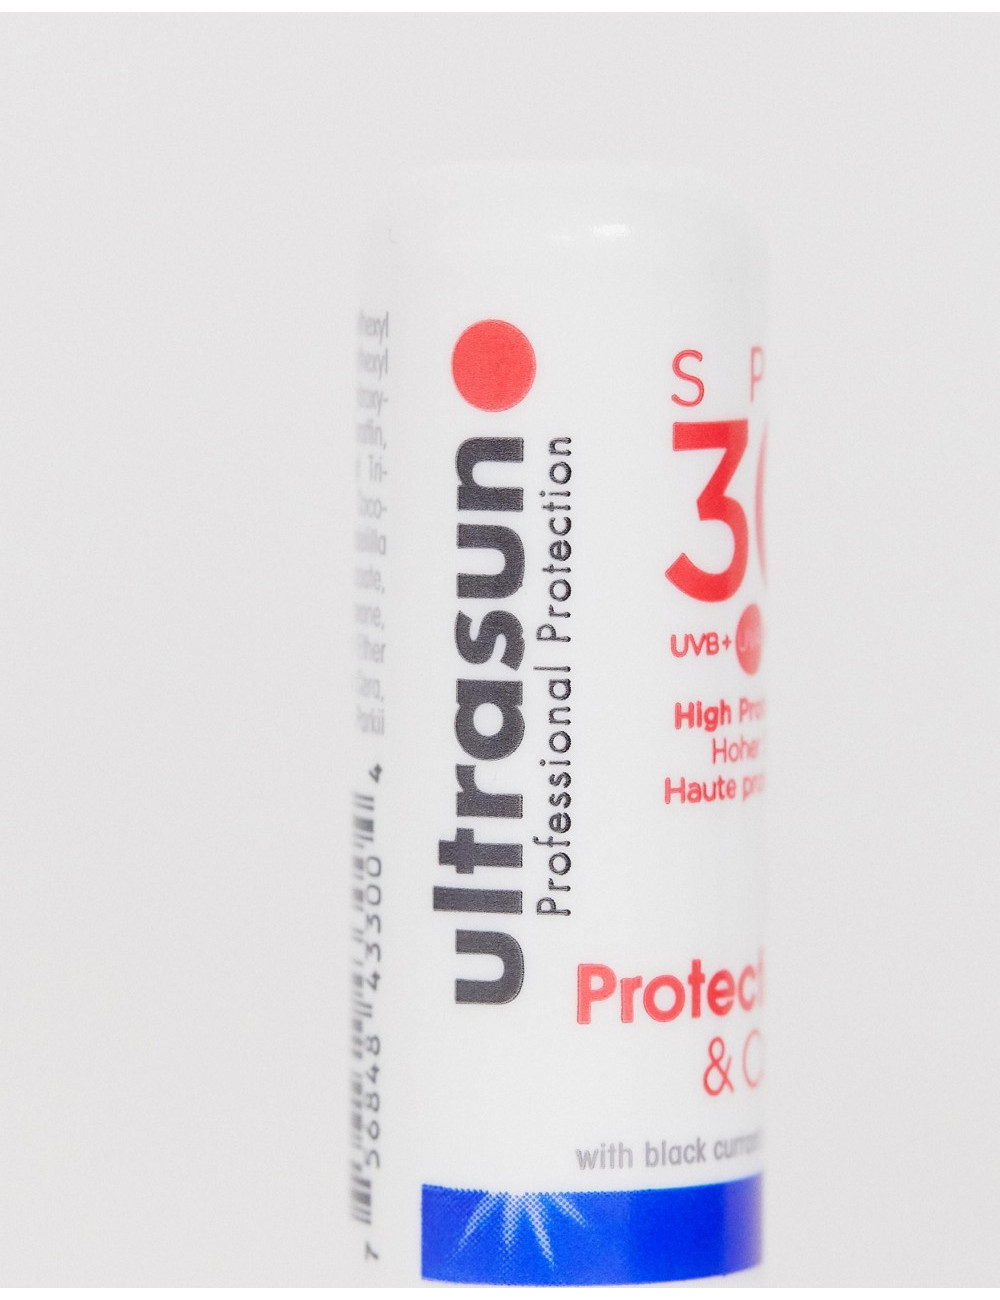 Ultrasun Lip Protection SPF 30